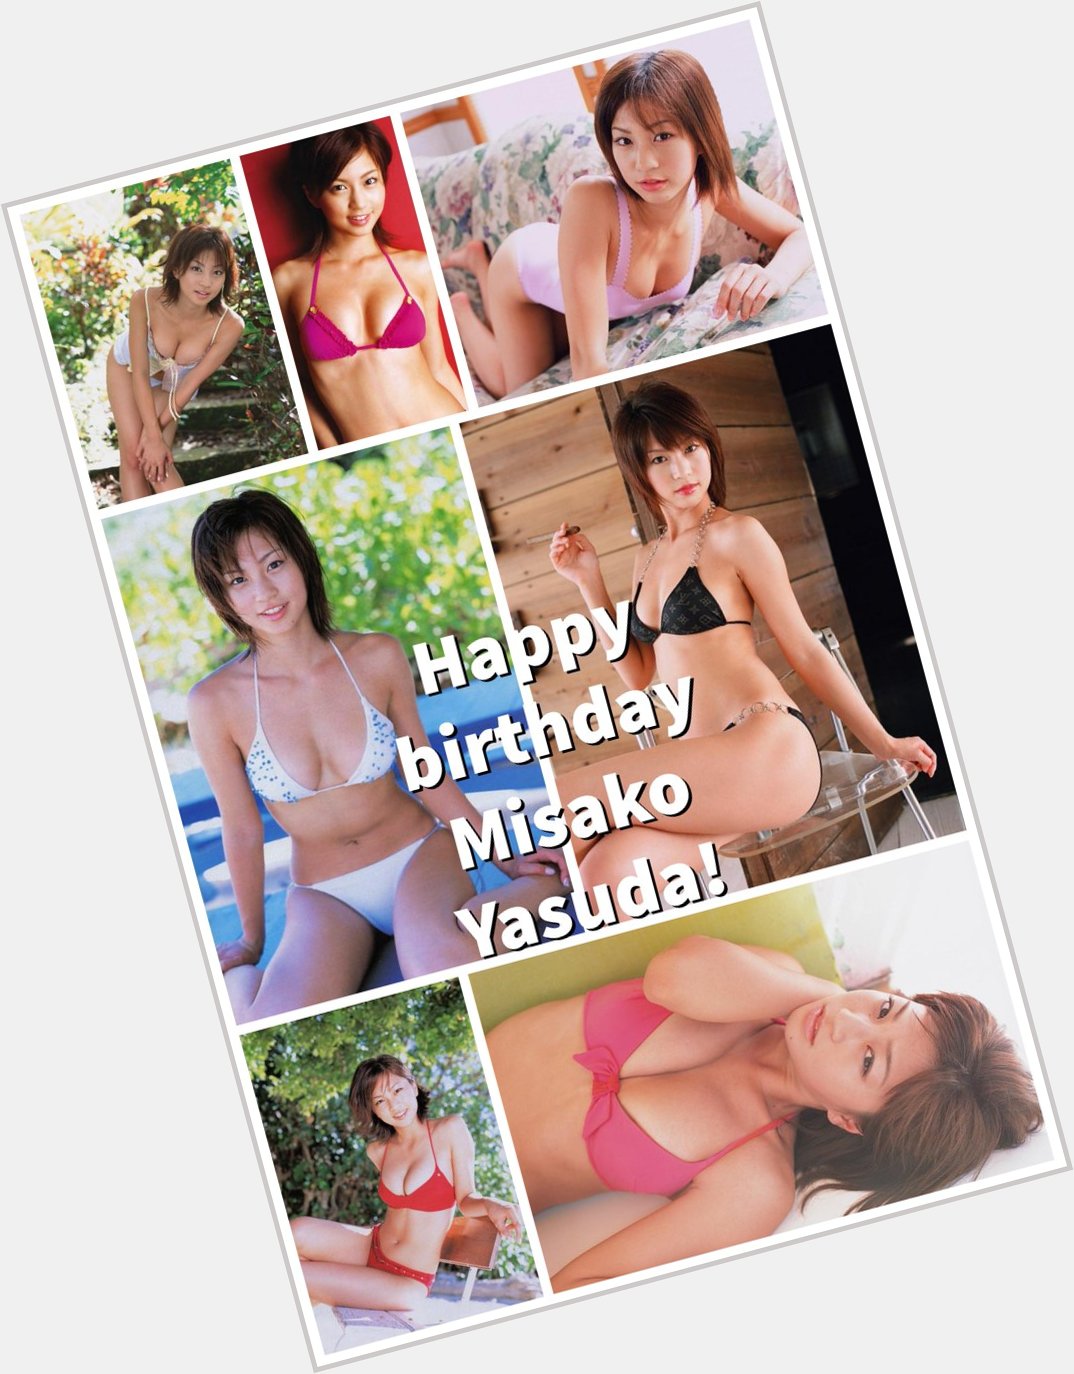                                            Happy 41st birthday Misako Yasuda!       